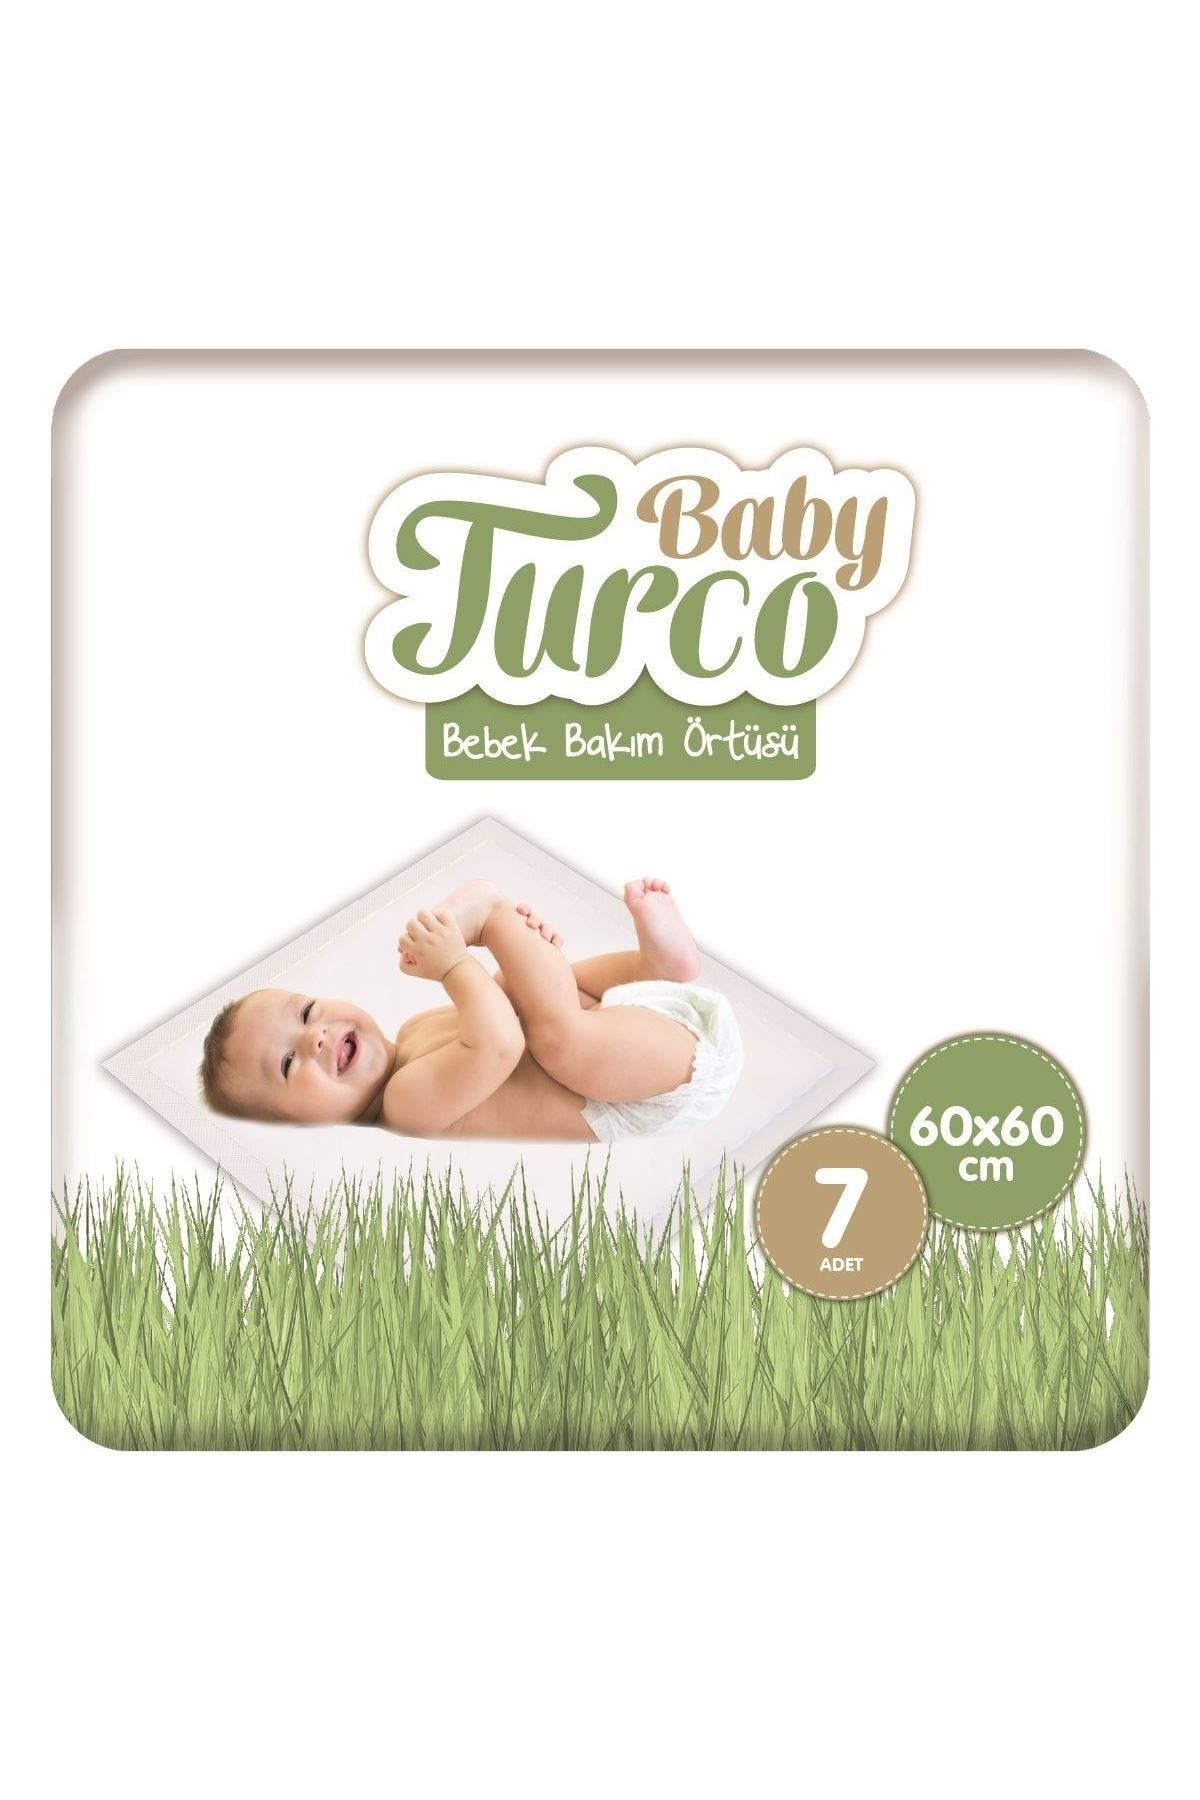 Baby Turco Bebek Bakım Örtüsü 60x60 Cm 7 Adet